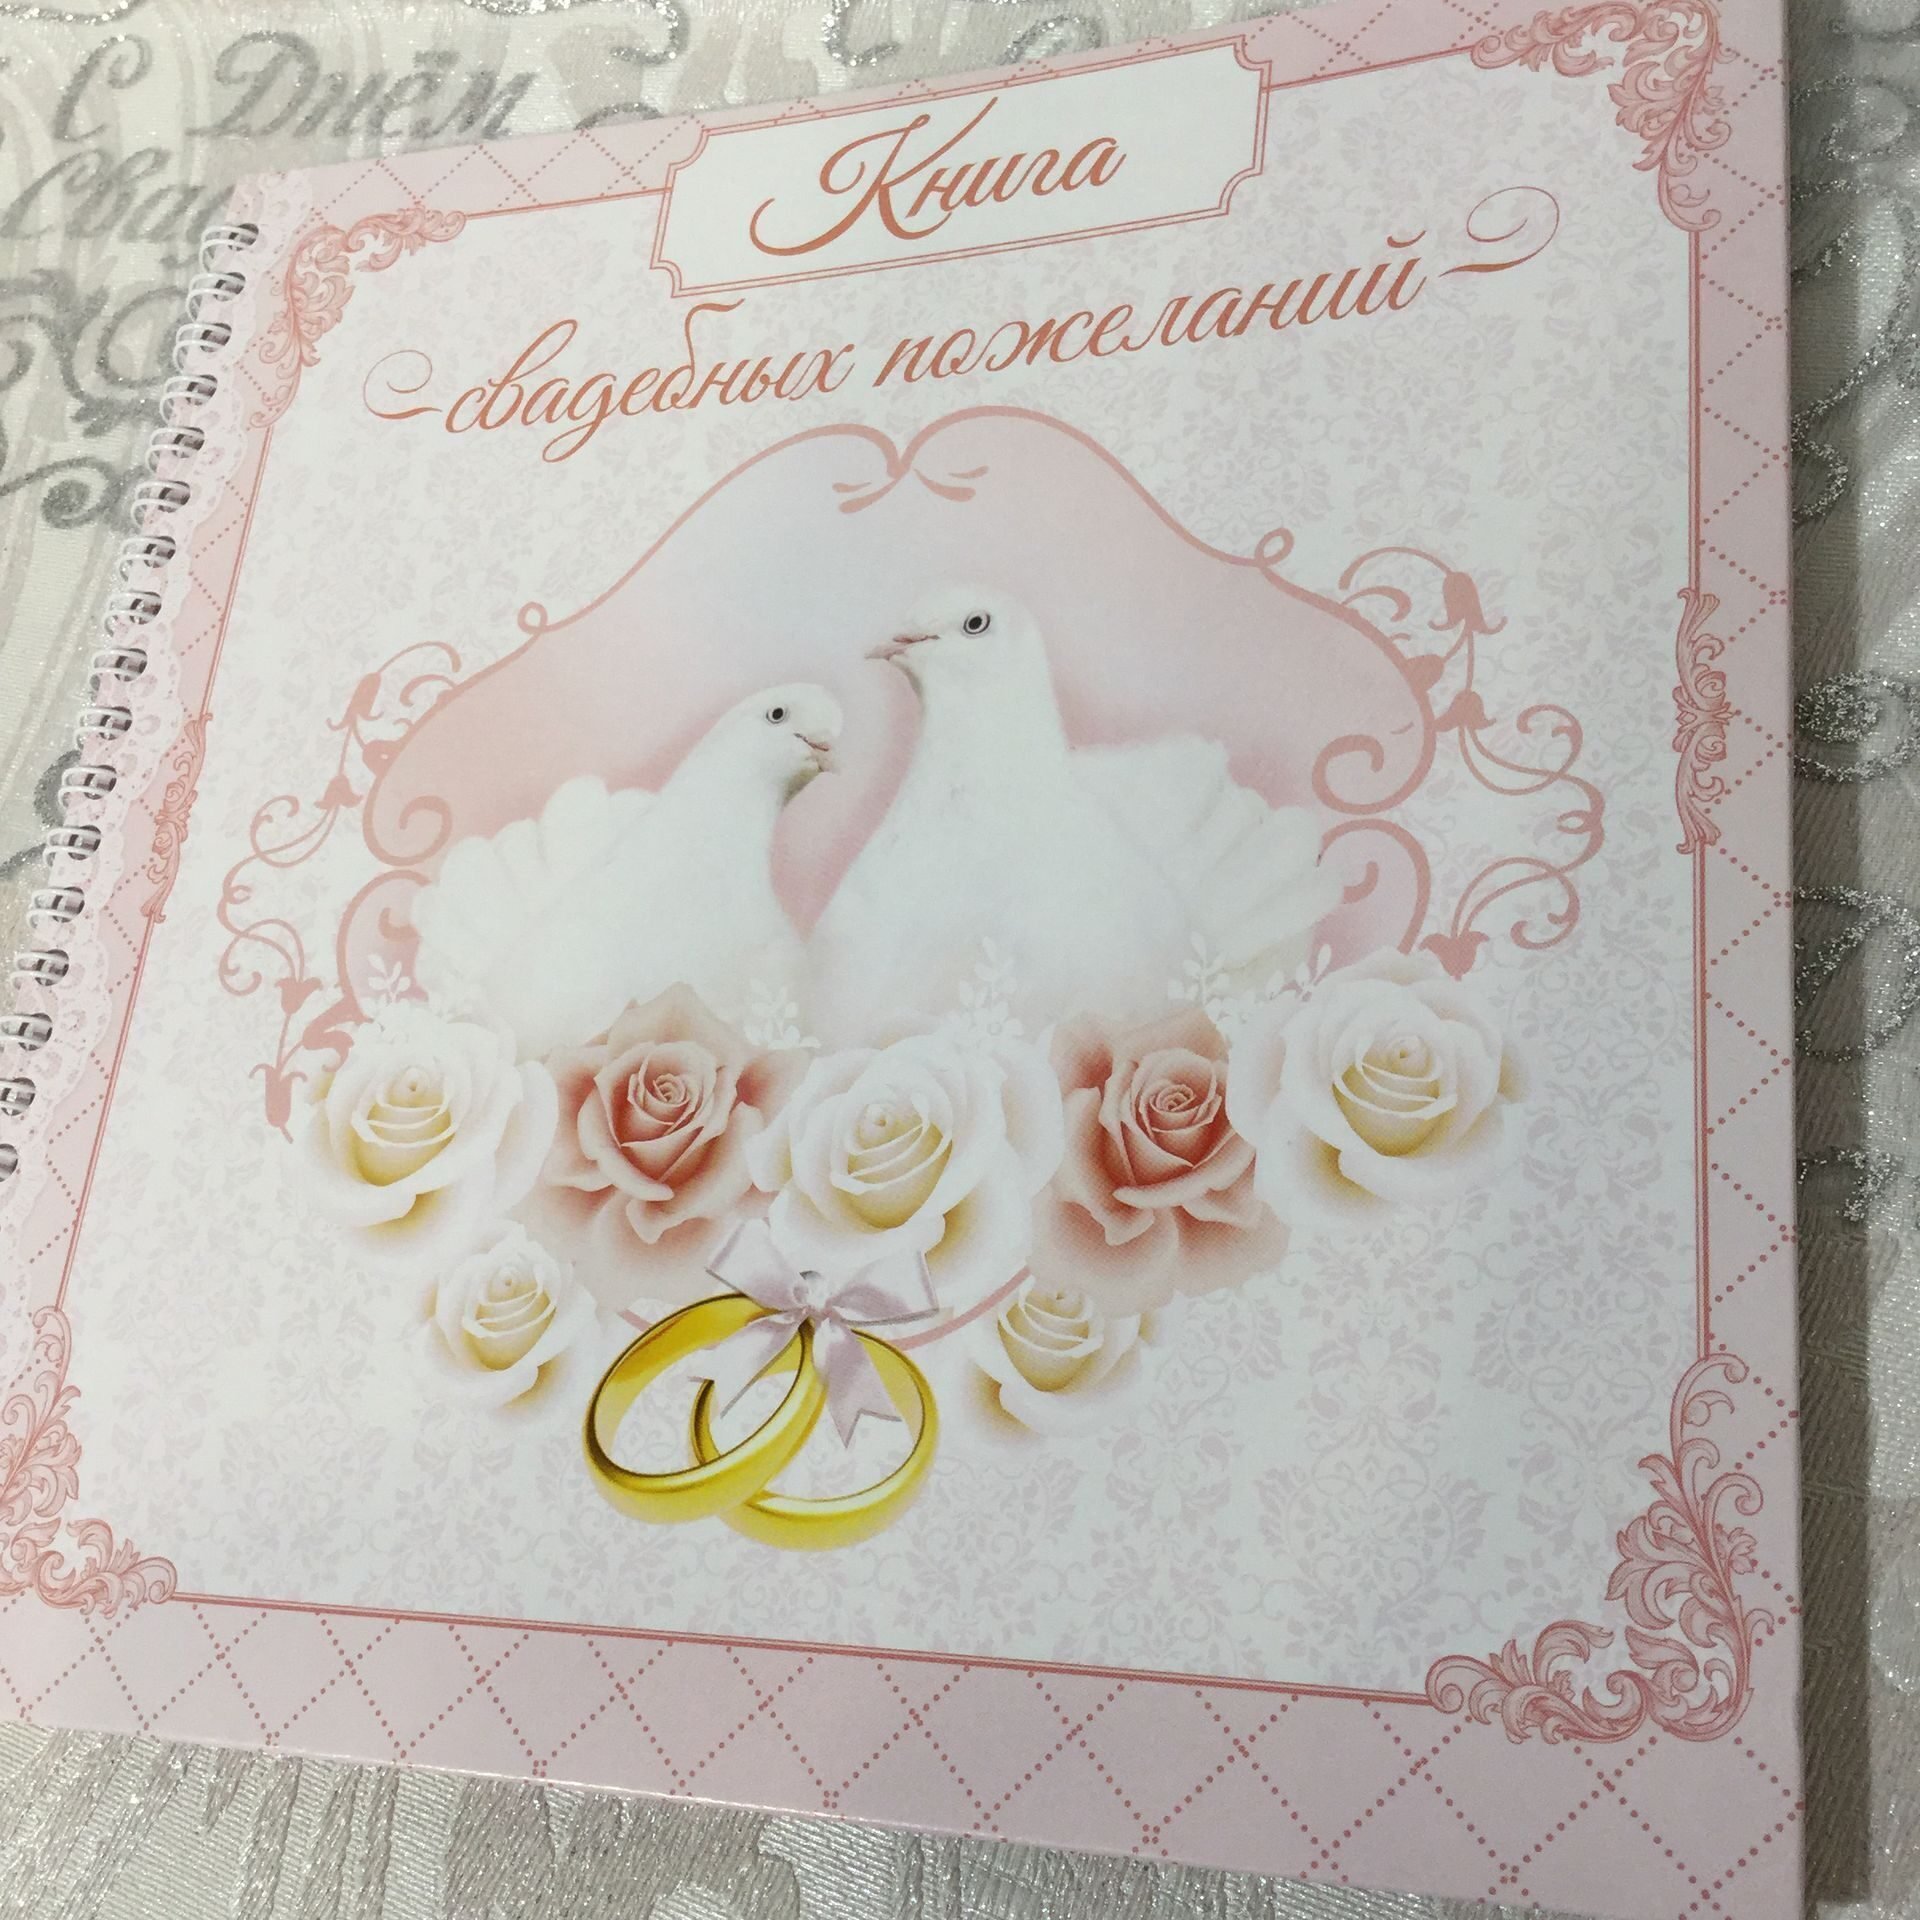 Месяцы замужества. Свадебные поздравления. Свадебная открытка. Открытка "к свадьбе". Открытки на свадьбу молодоженам.